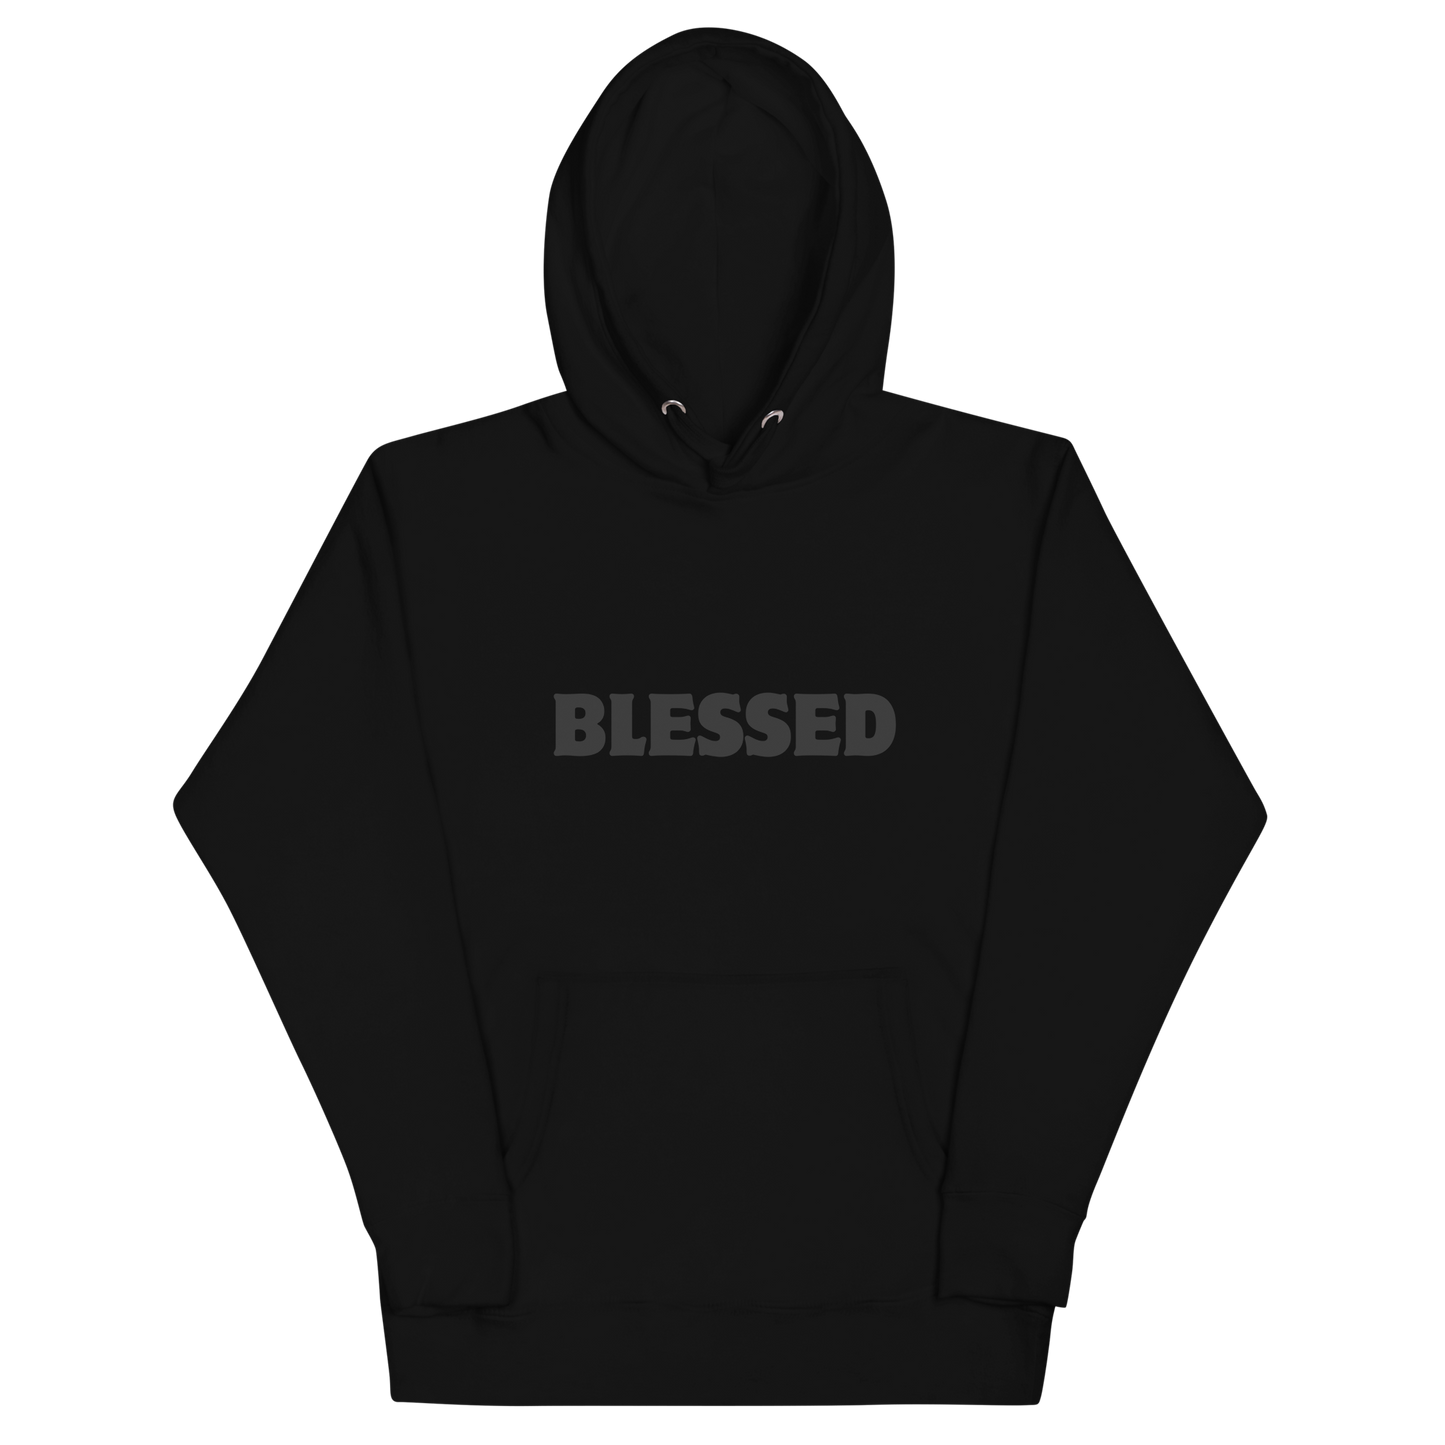 BLESSED hoodie Black on Black